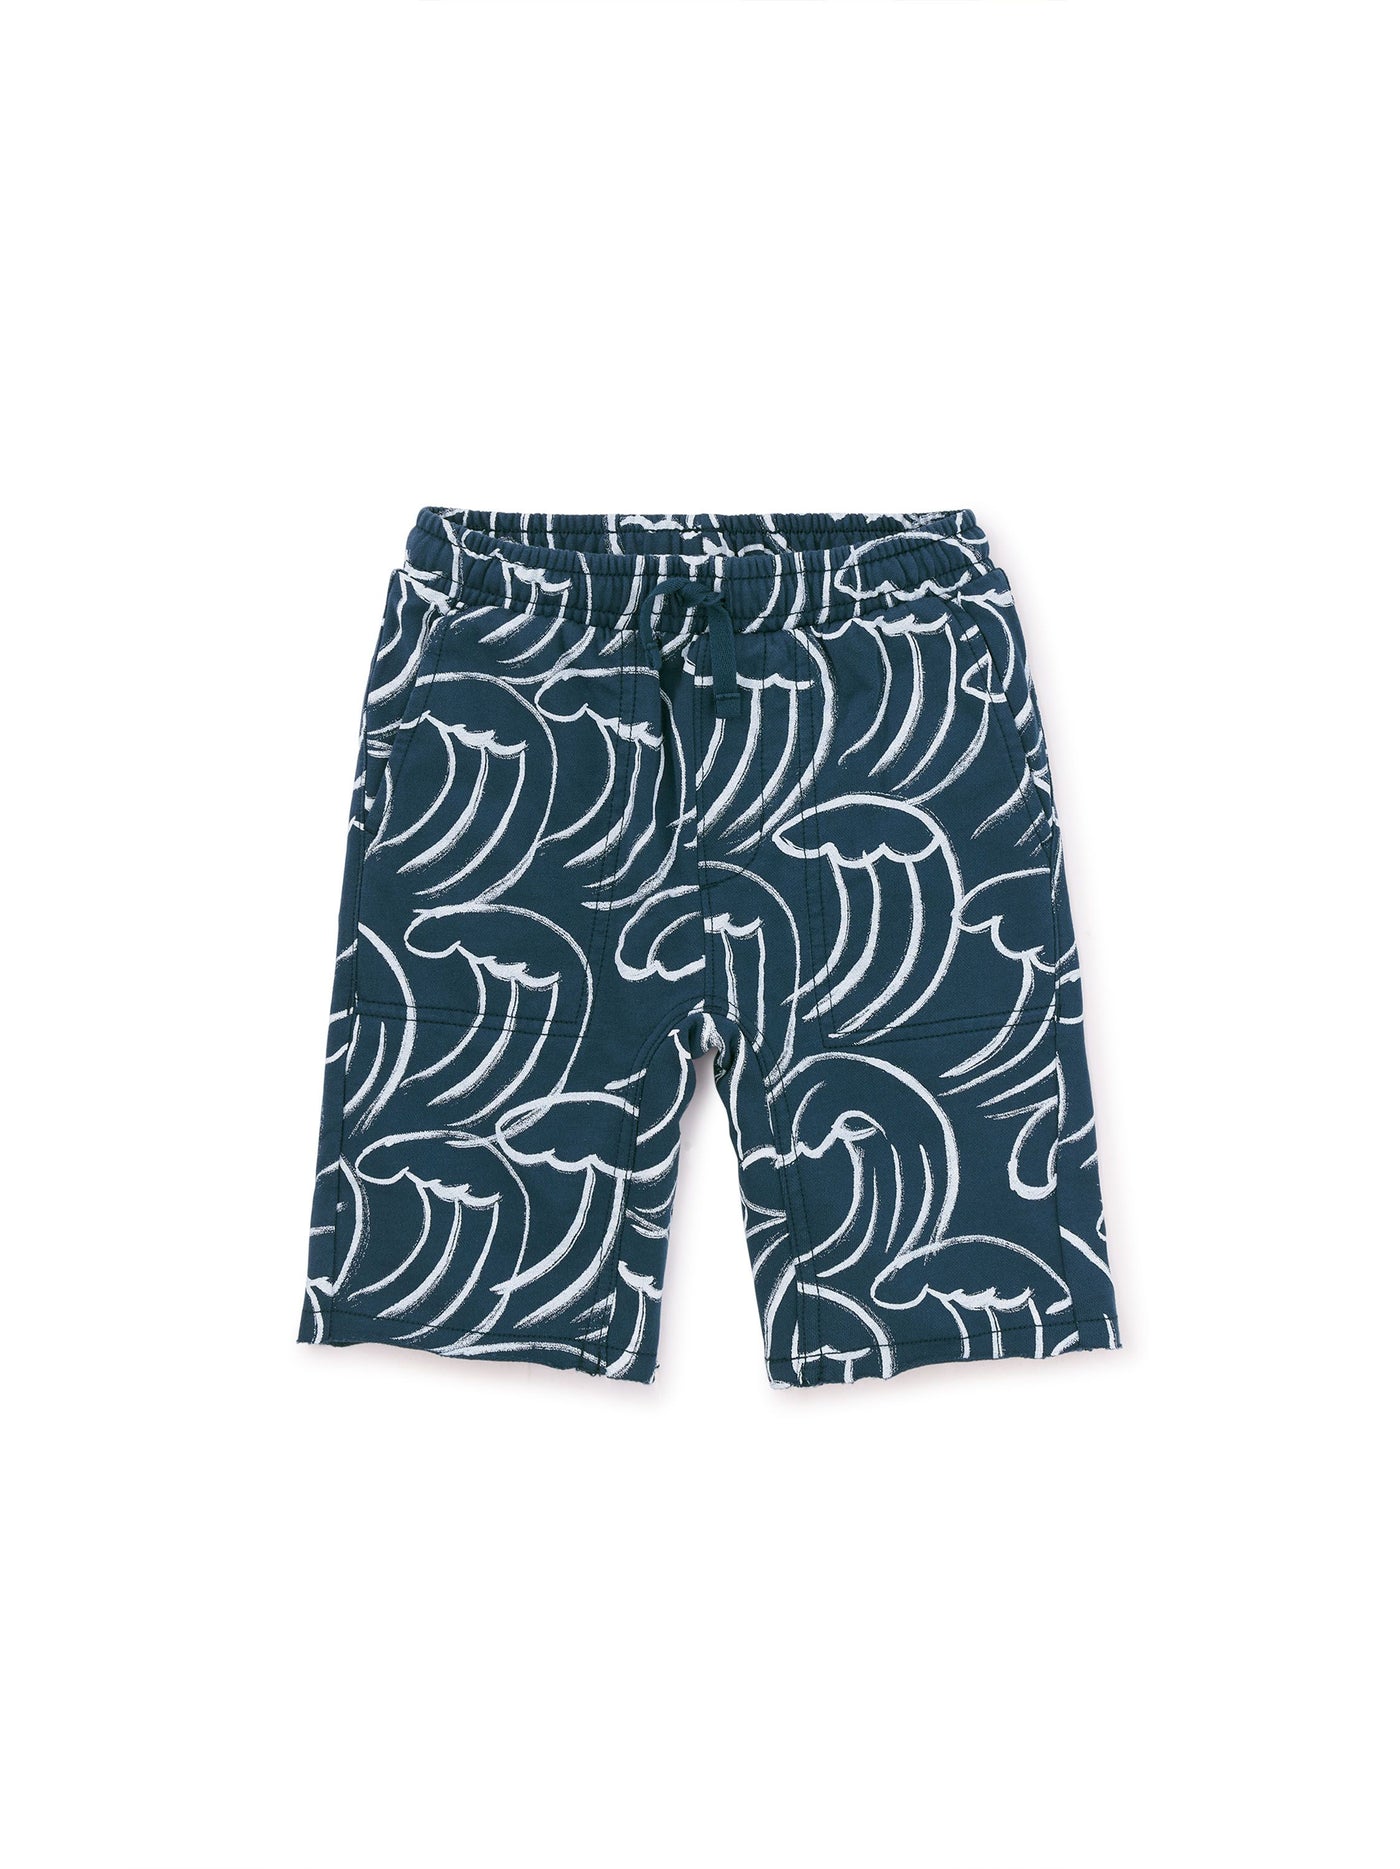 Printed Shorts/ Kanagawa Waves